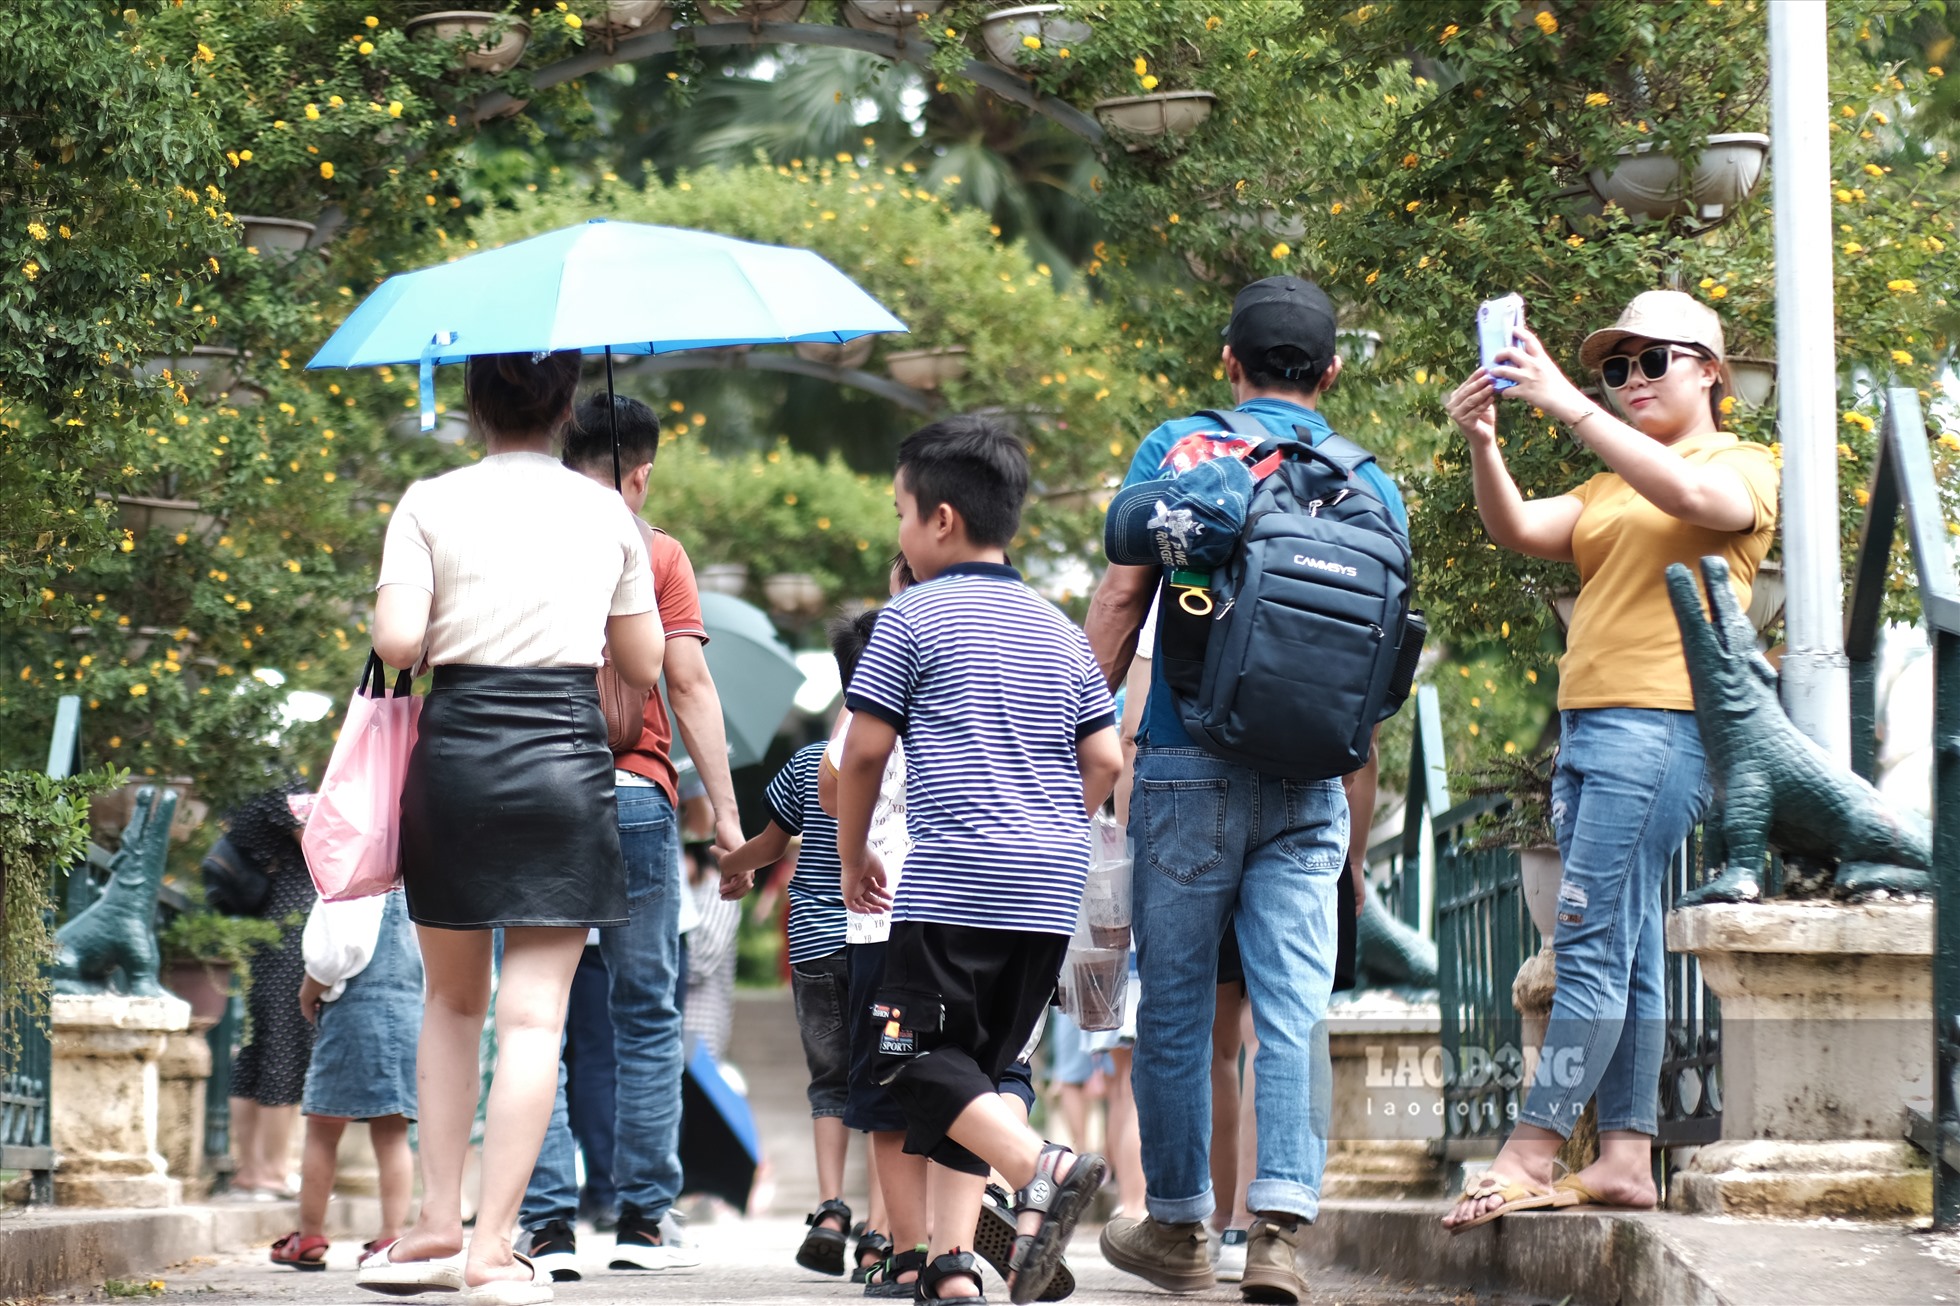 Hiện tại, giá vé vào Vườn bách thú Hà Nội là 30.000 đồng/vé người lớn và 20.000 đồng/vé trẻ em. Vườn bách thú mở cửa từ 8-18h hằng ngày.